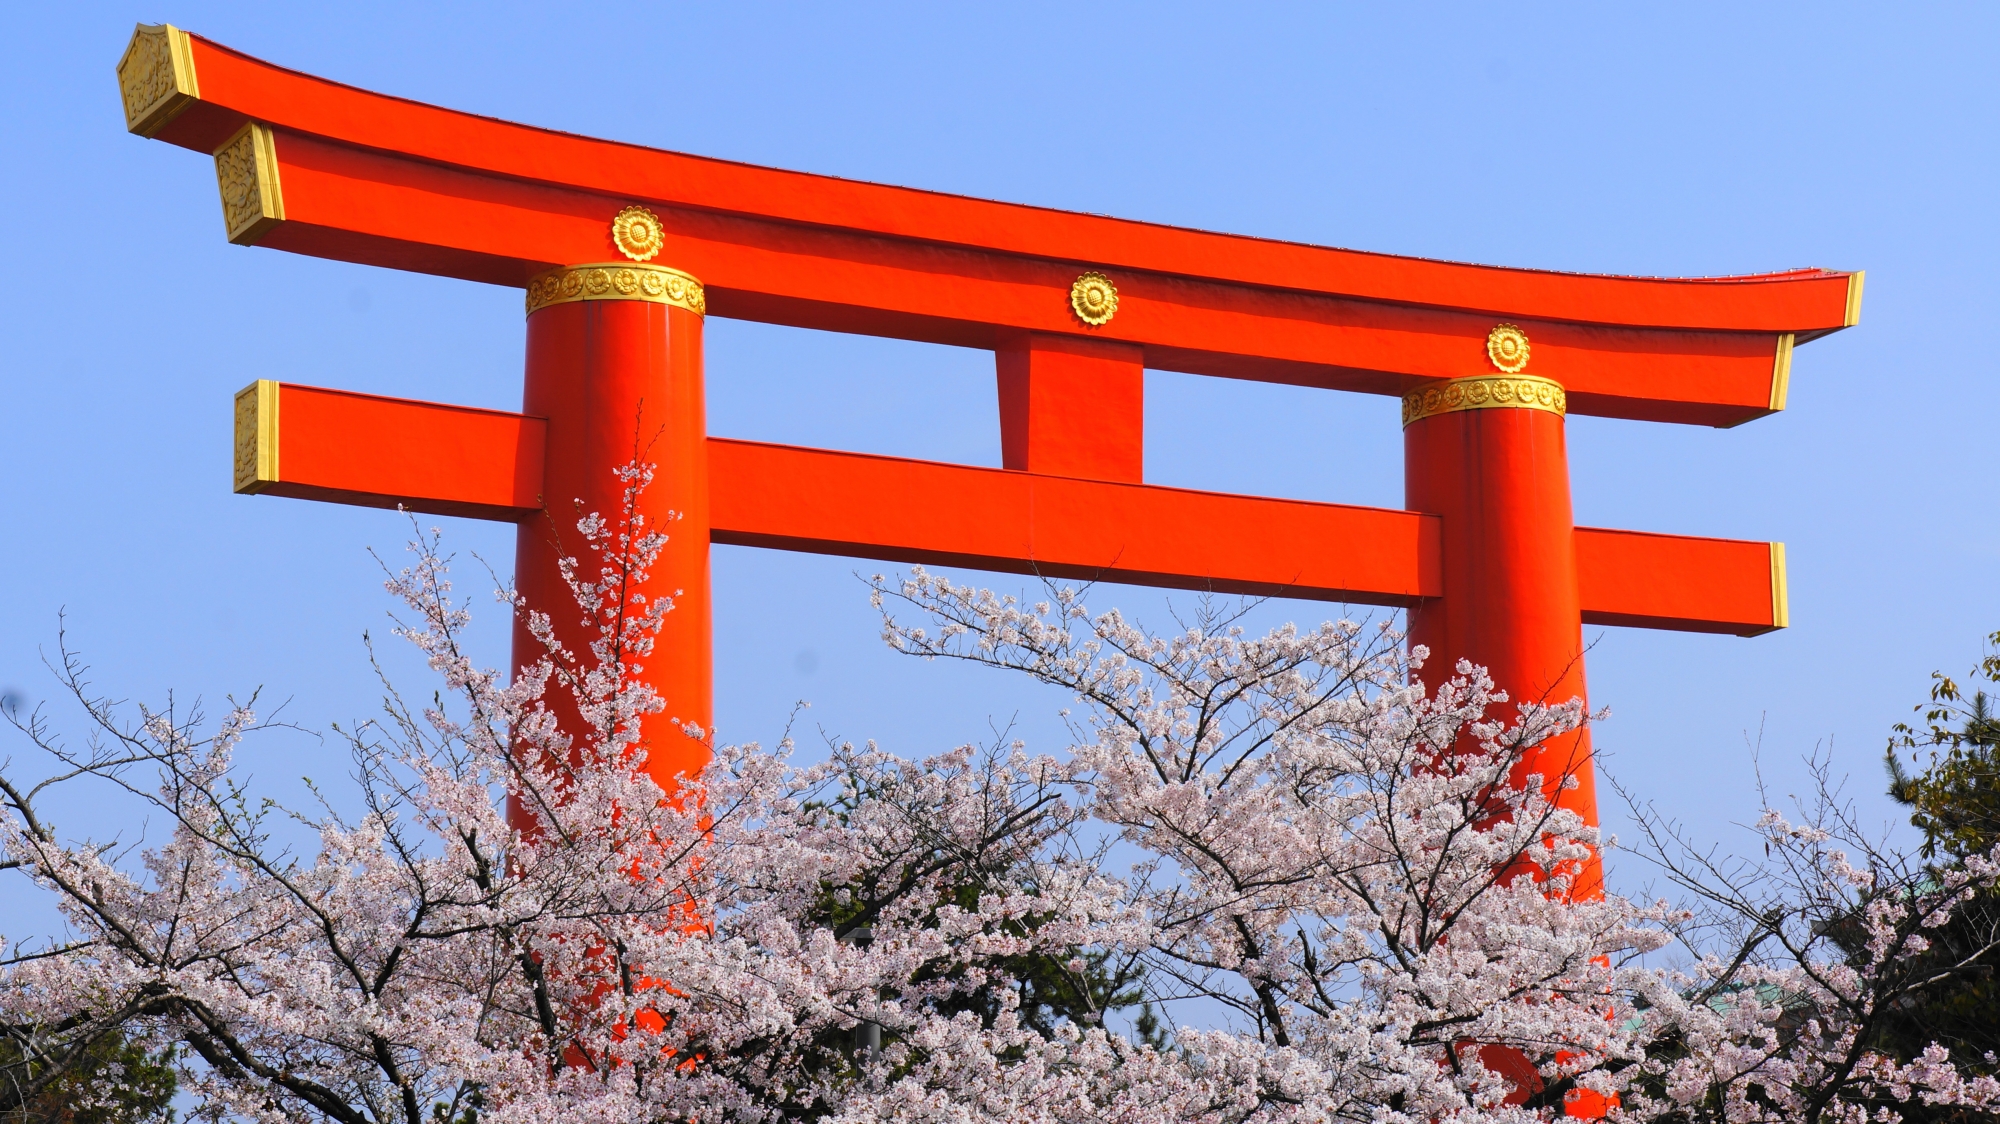 平安神宮の大鳥居と桜